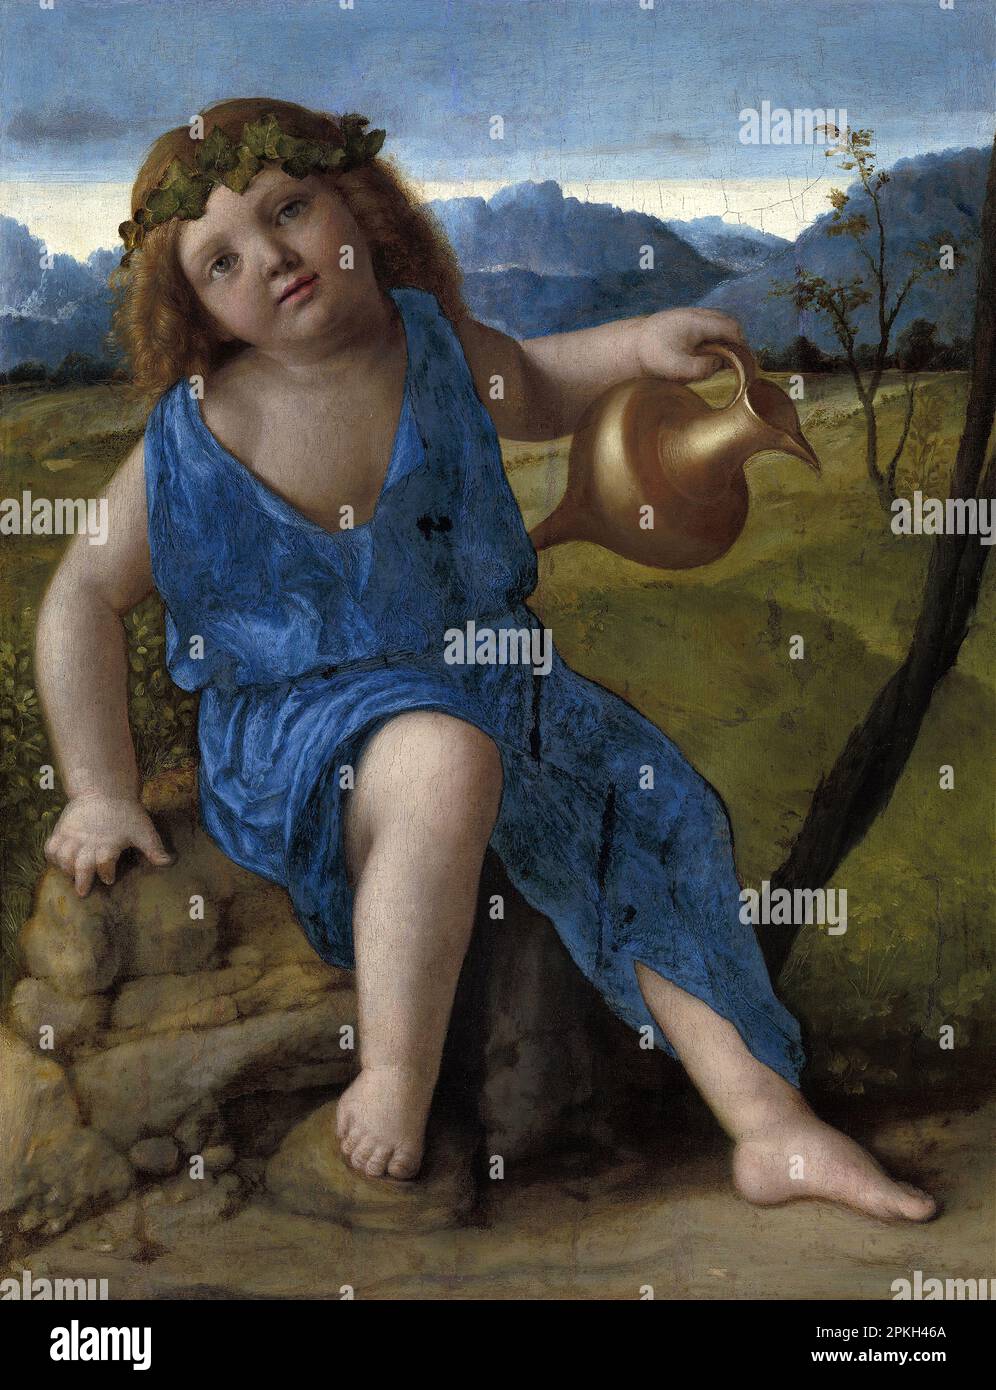 Der Infant Bacchus, gemalt vom italienischen Renaissance-Künstler Giovanni Bellini. In der griechischen Mythologie ist dieser gott als Dionysos bekannt Stockfoto